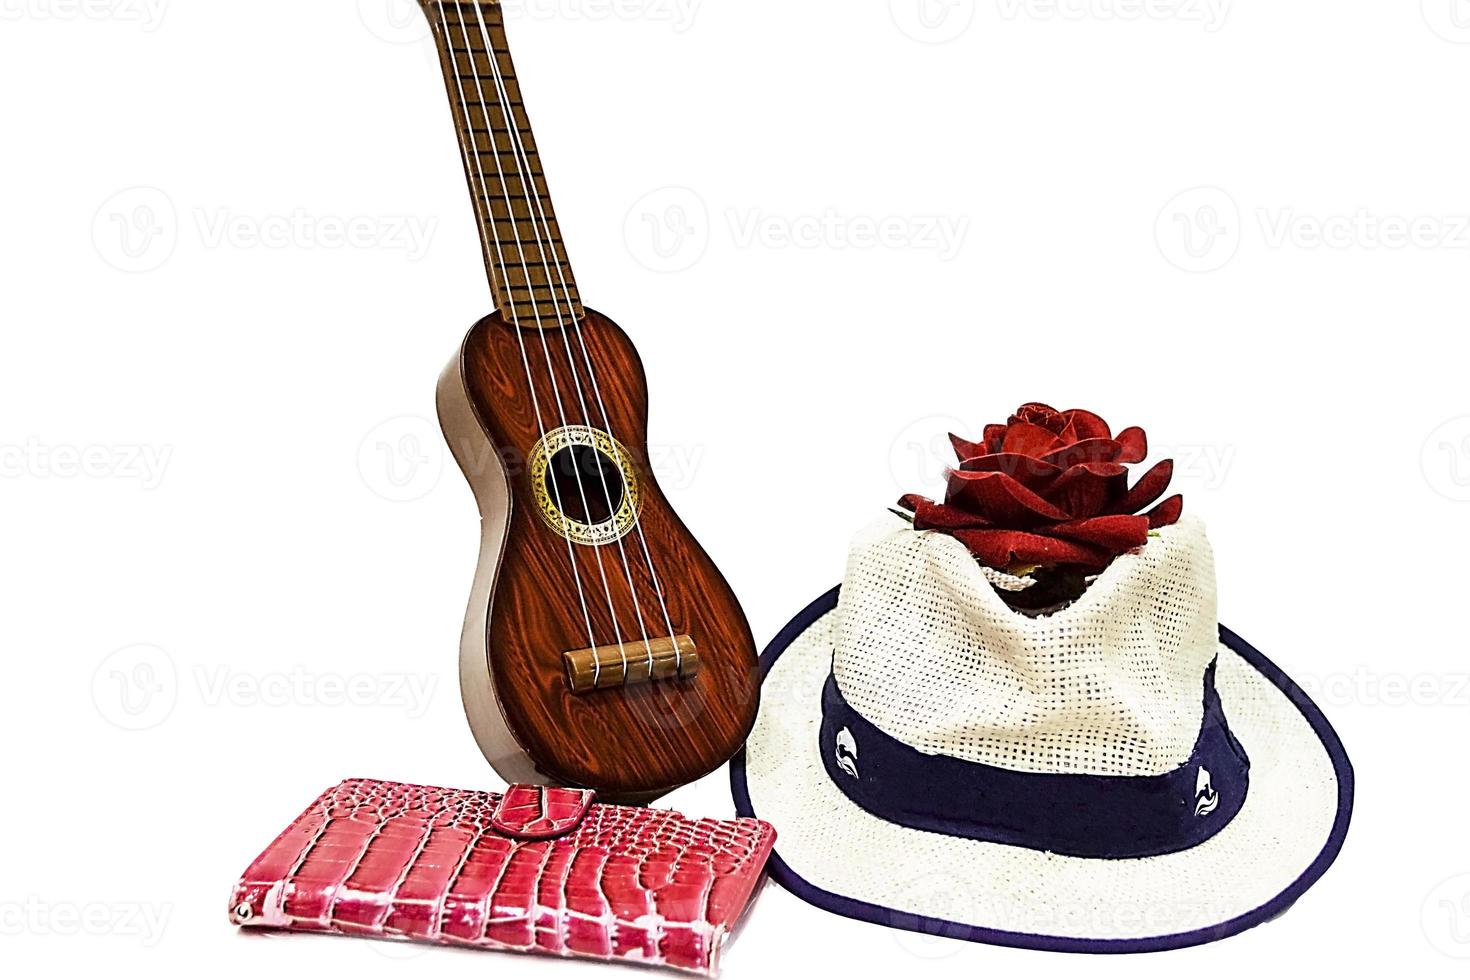 guitarra acústica y flor rosa roja, aislada en blanco foto